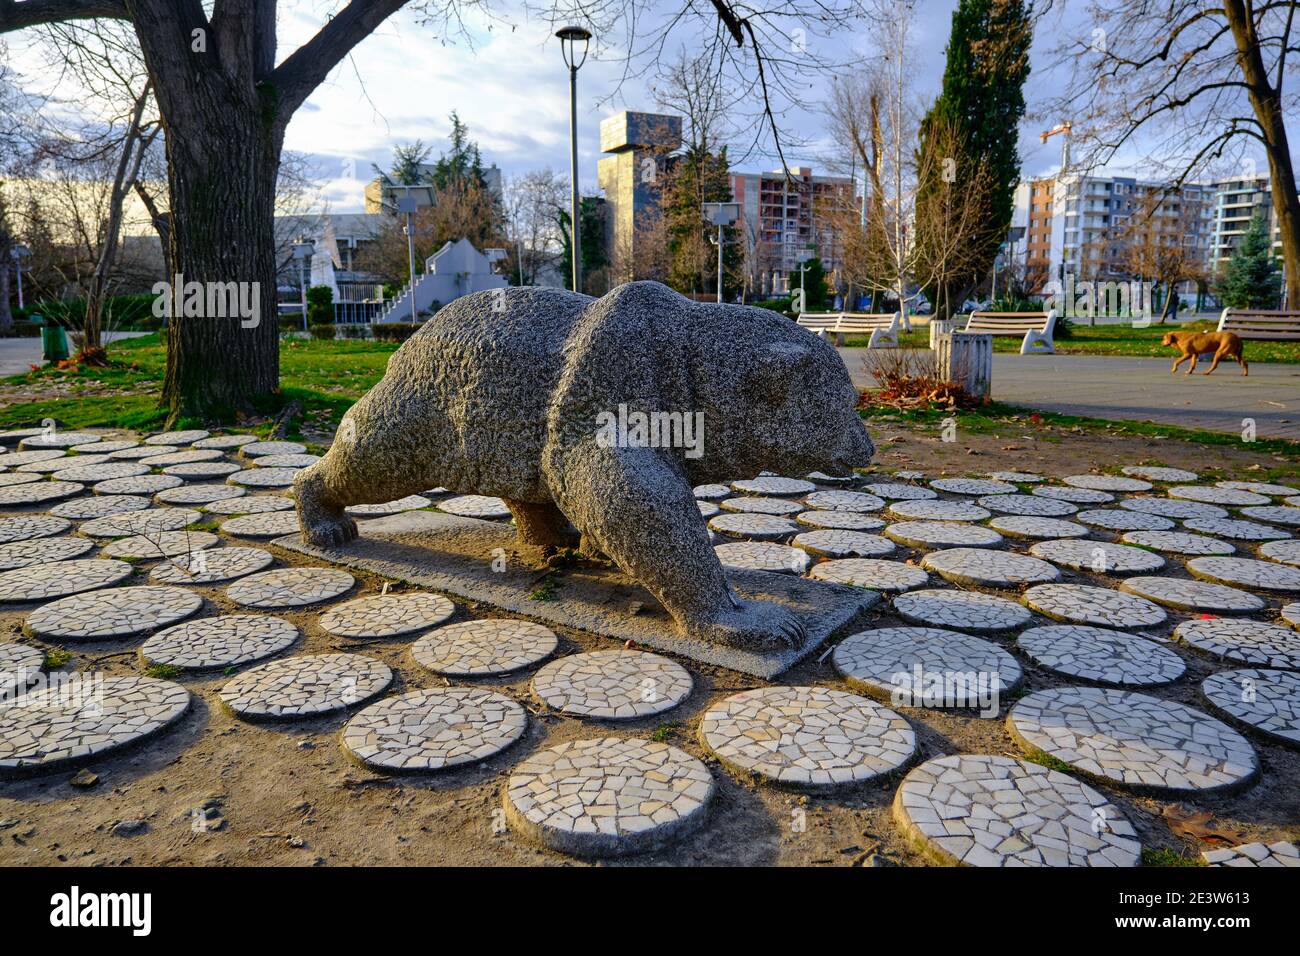 07.01.2021. Bulgarie, Kardzhali. Ours sculpture dans parc ouvert à Kardzali Bulgarie en début de matinée avec soleil. Banque D'Images